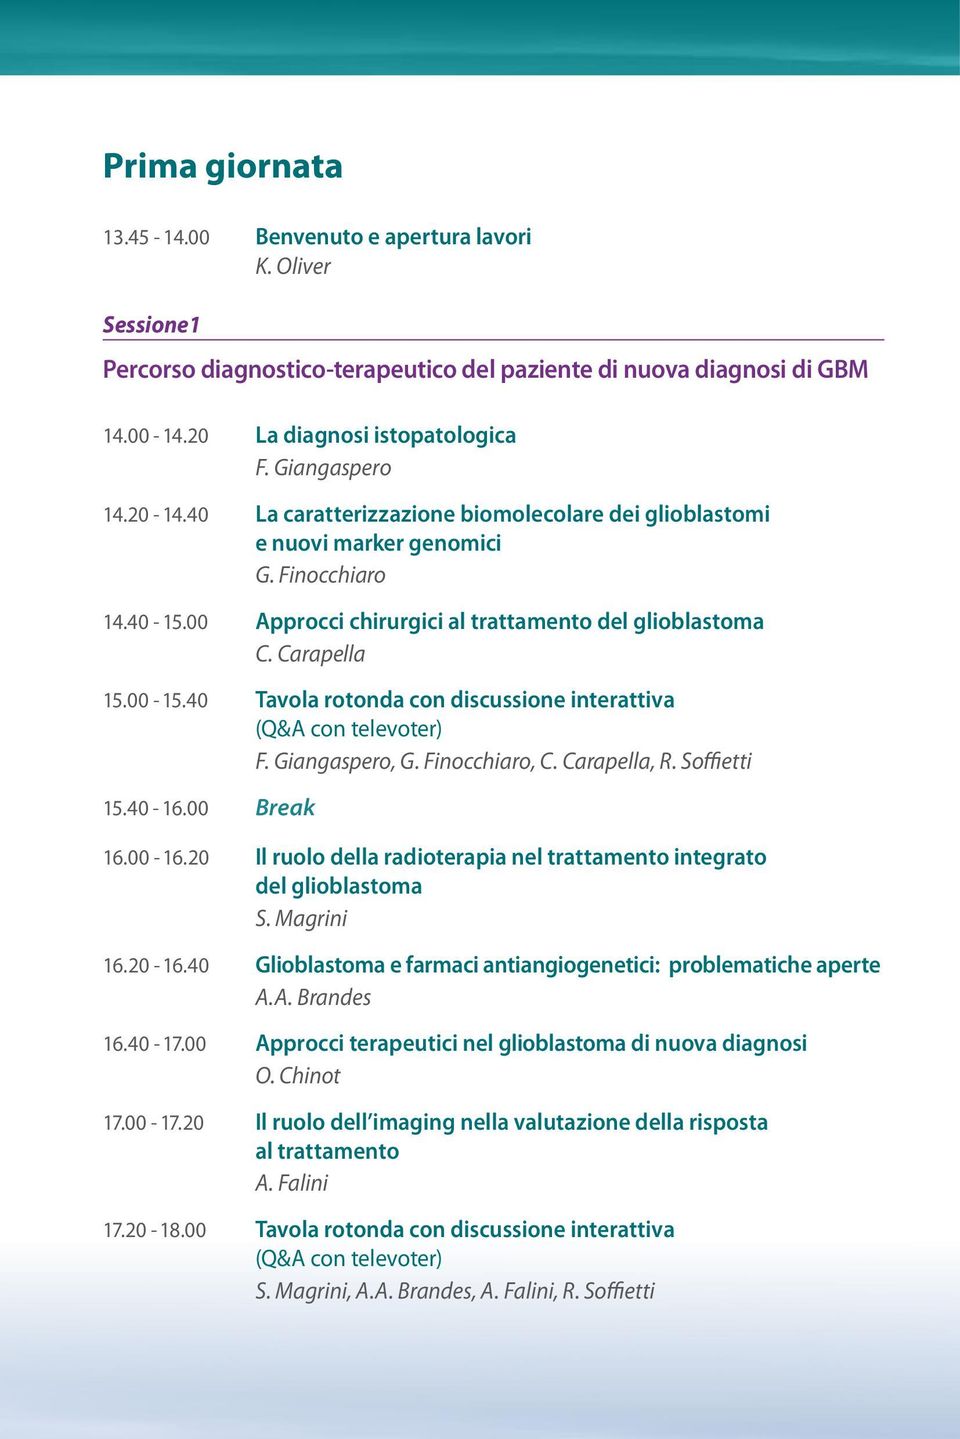 00-15.40 Tavola rotonda con discussione interattiva F. Giangaspero, G. Finocchiaro, C. Carapella, R. Soffietti 15.40-16.00 Break 16.00-16.